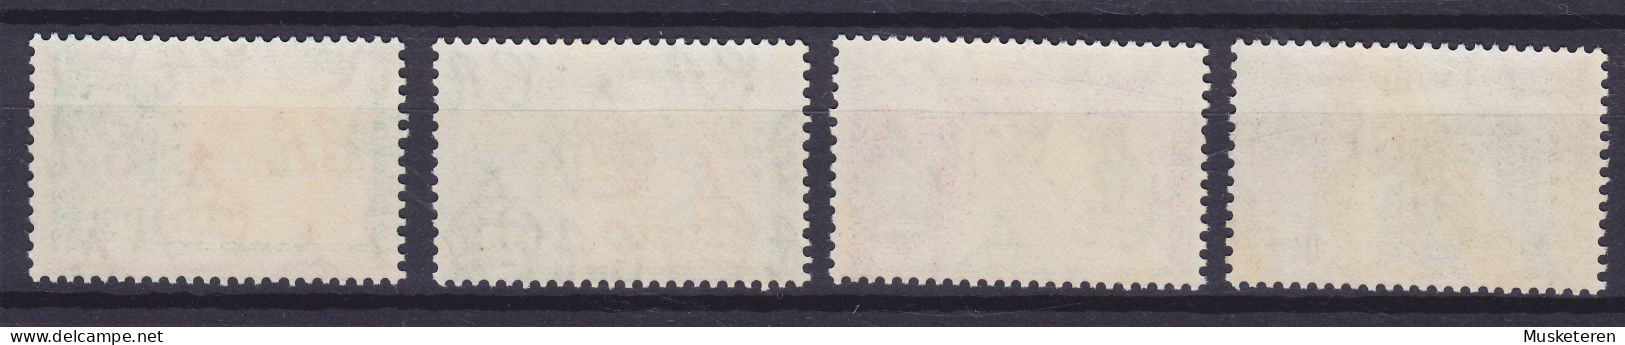 Mauritius 1948 Mi. 217-20, 100 Jahre Briefmarken Von Mauritius, Complete Set, MNH** - Mauritius (...-1967)